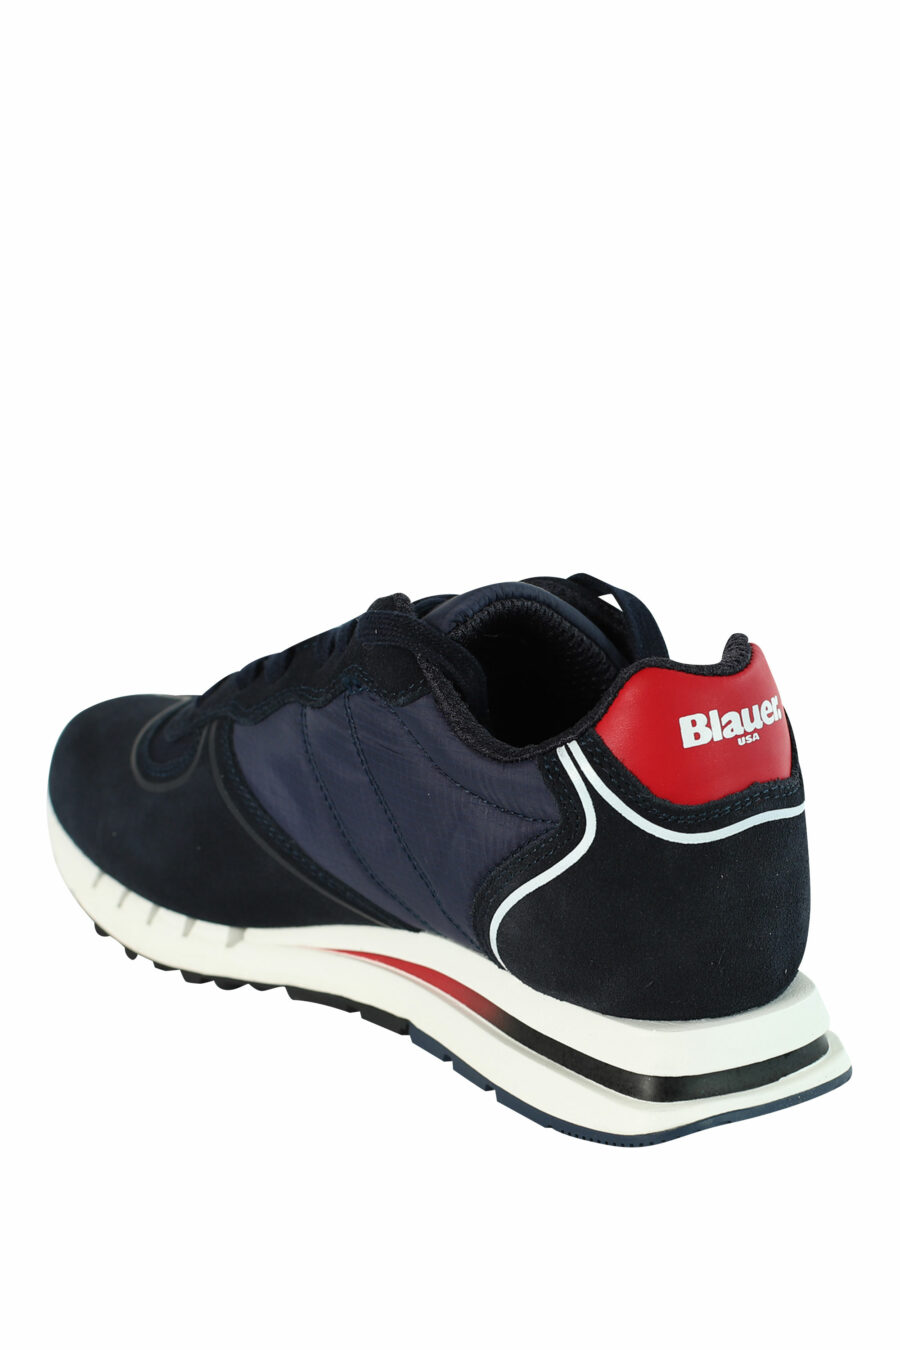 Sapatos "QUARTZ" azuis com pormenores vermelhos - 8058156499454 4